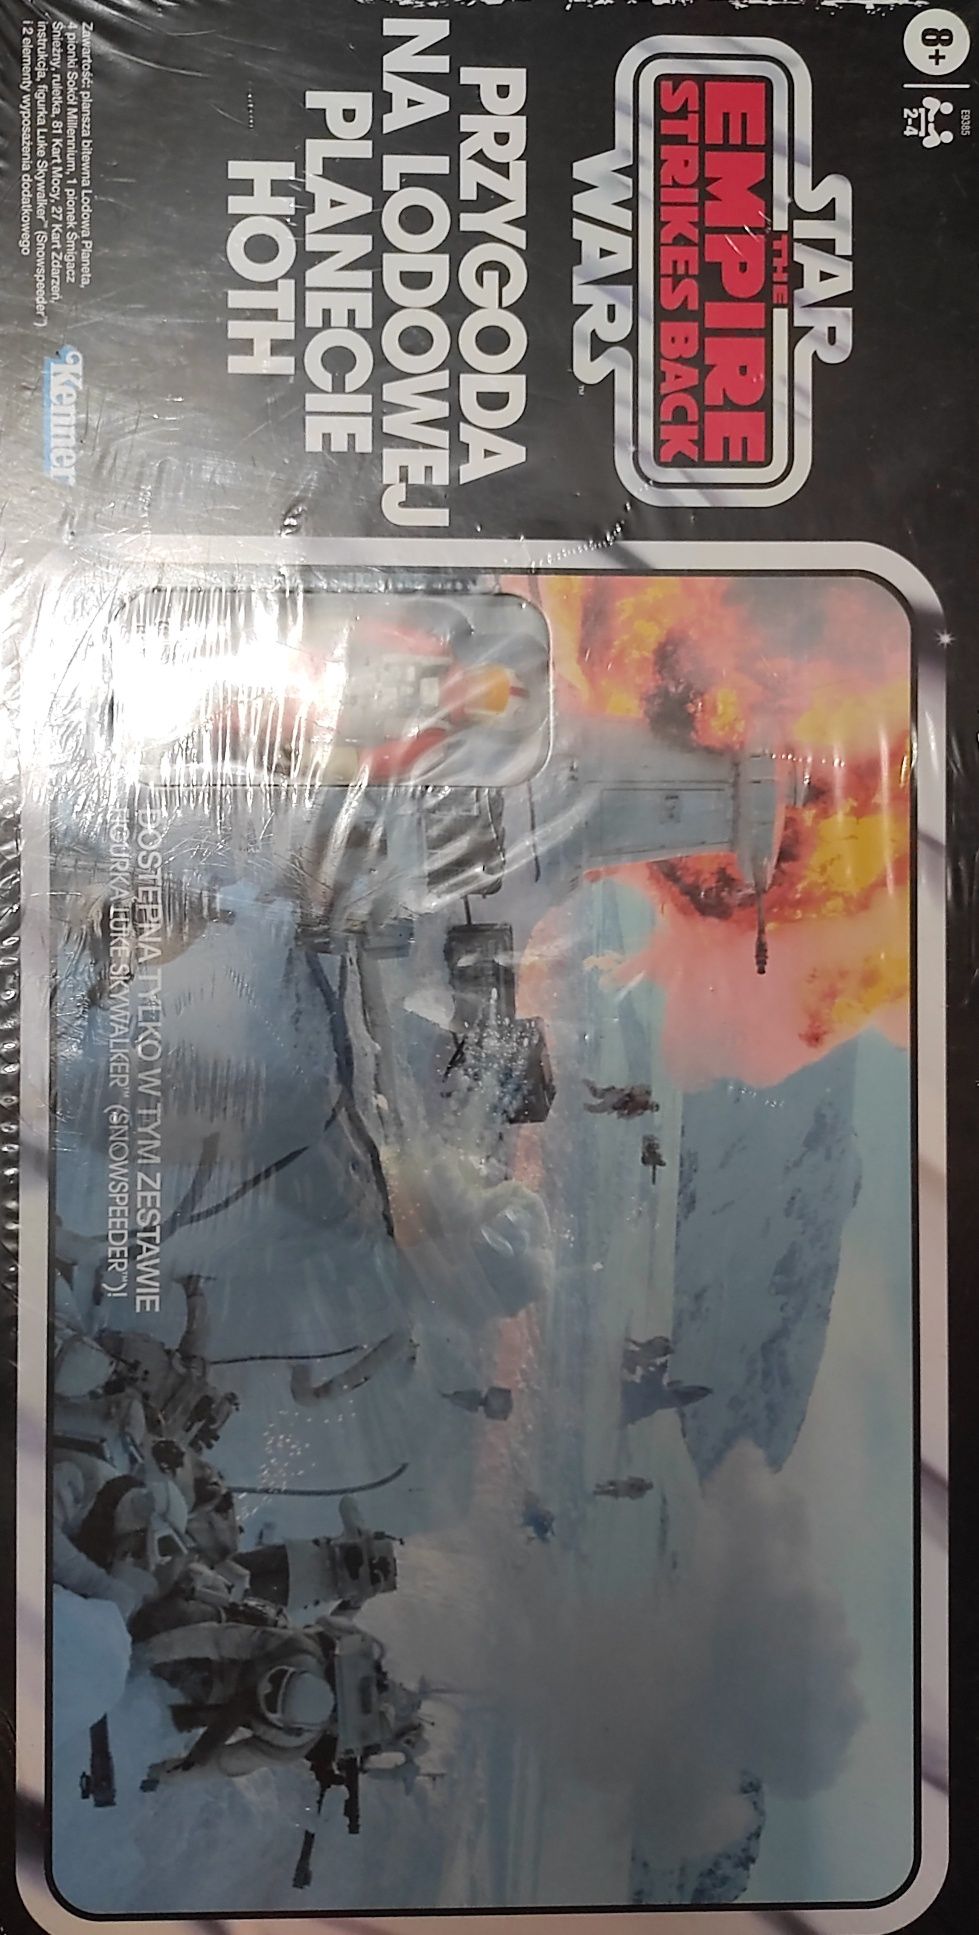 Gra planszowa Star Wars z figurka Luke Skywalker